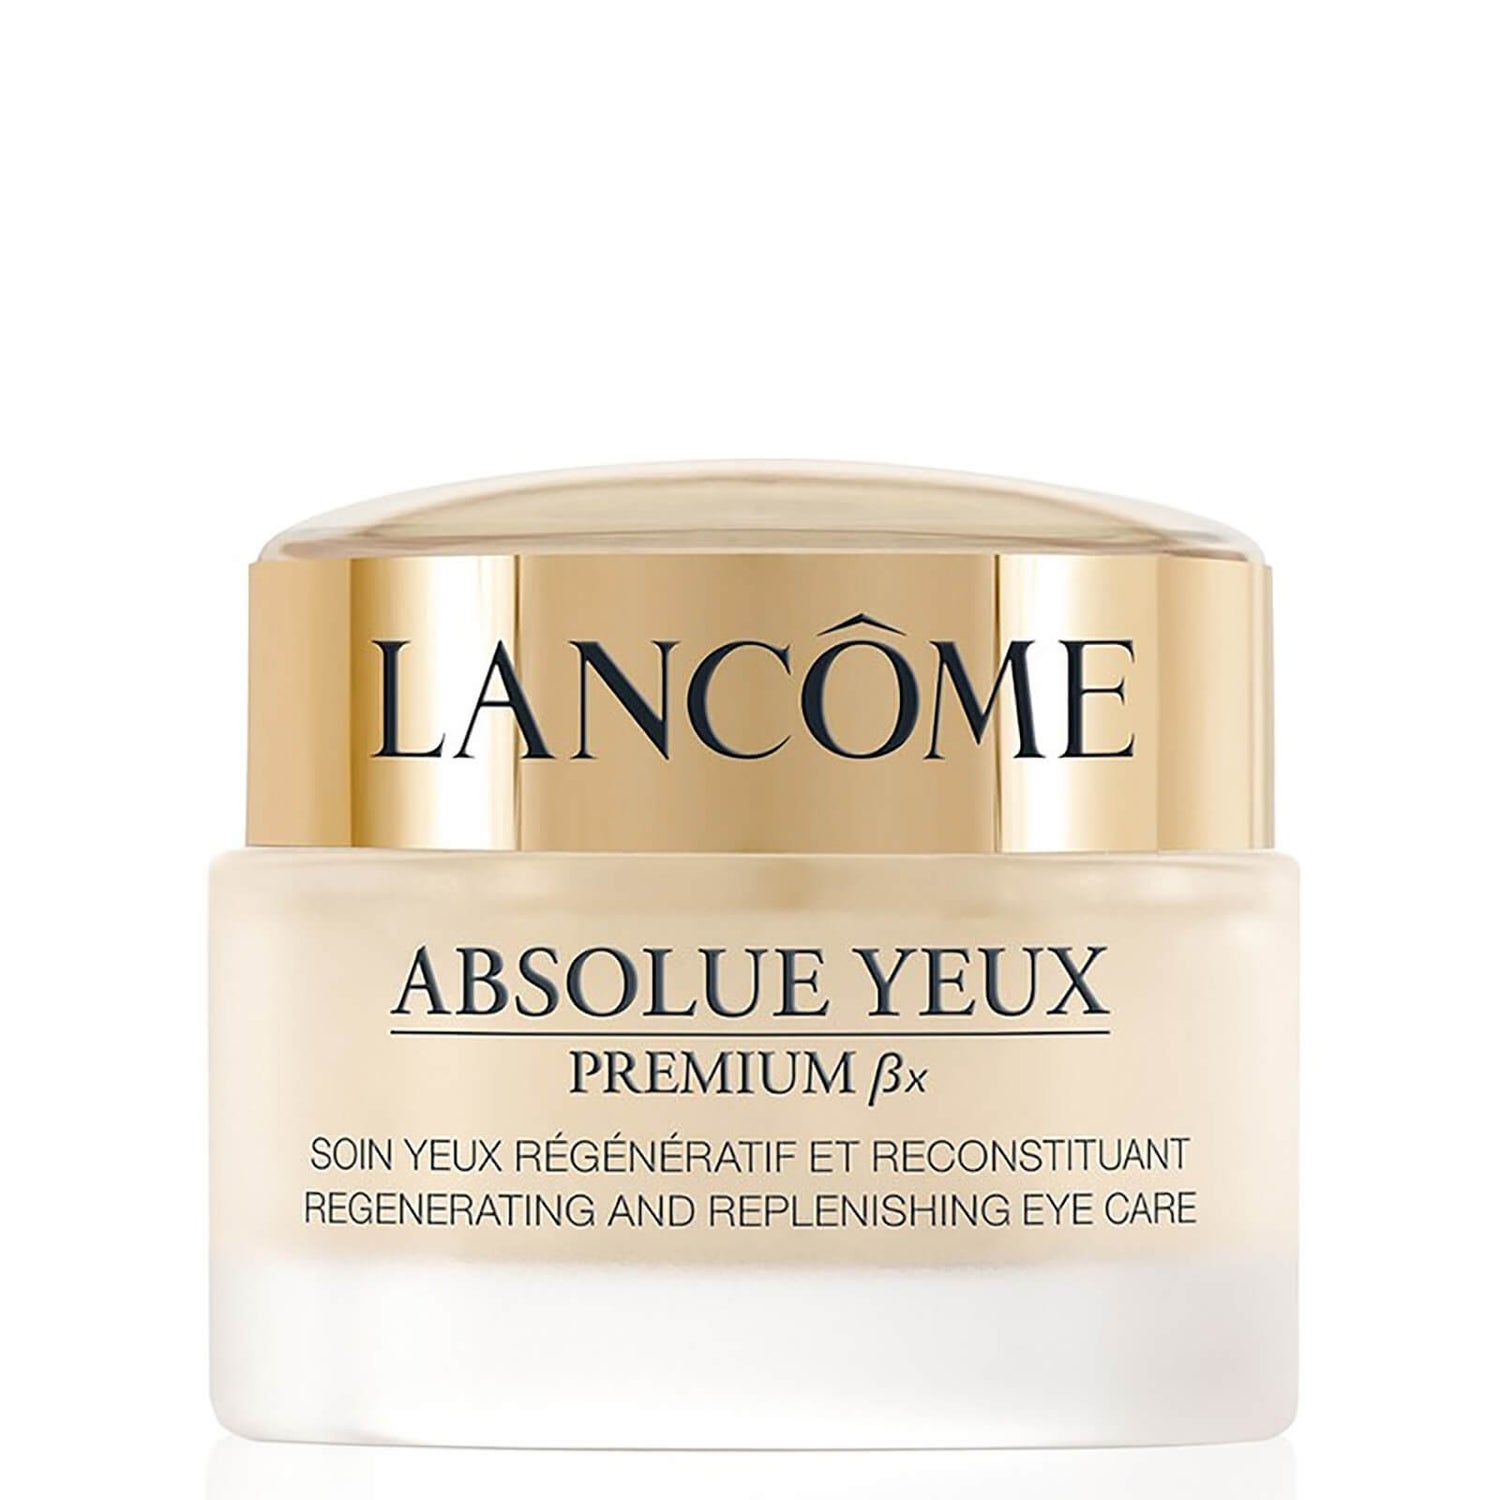 Lancôme Absolue Yeux Premium BX Eye Cream 20ml